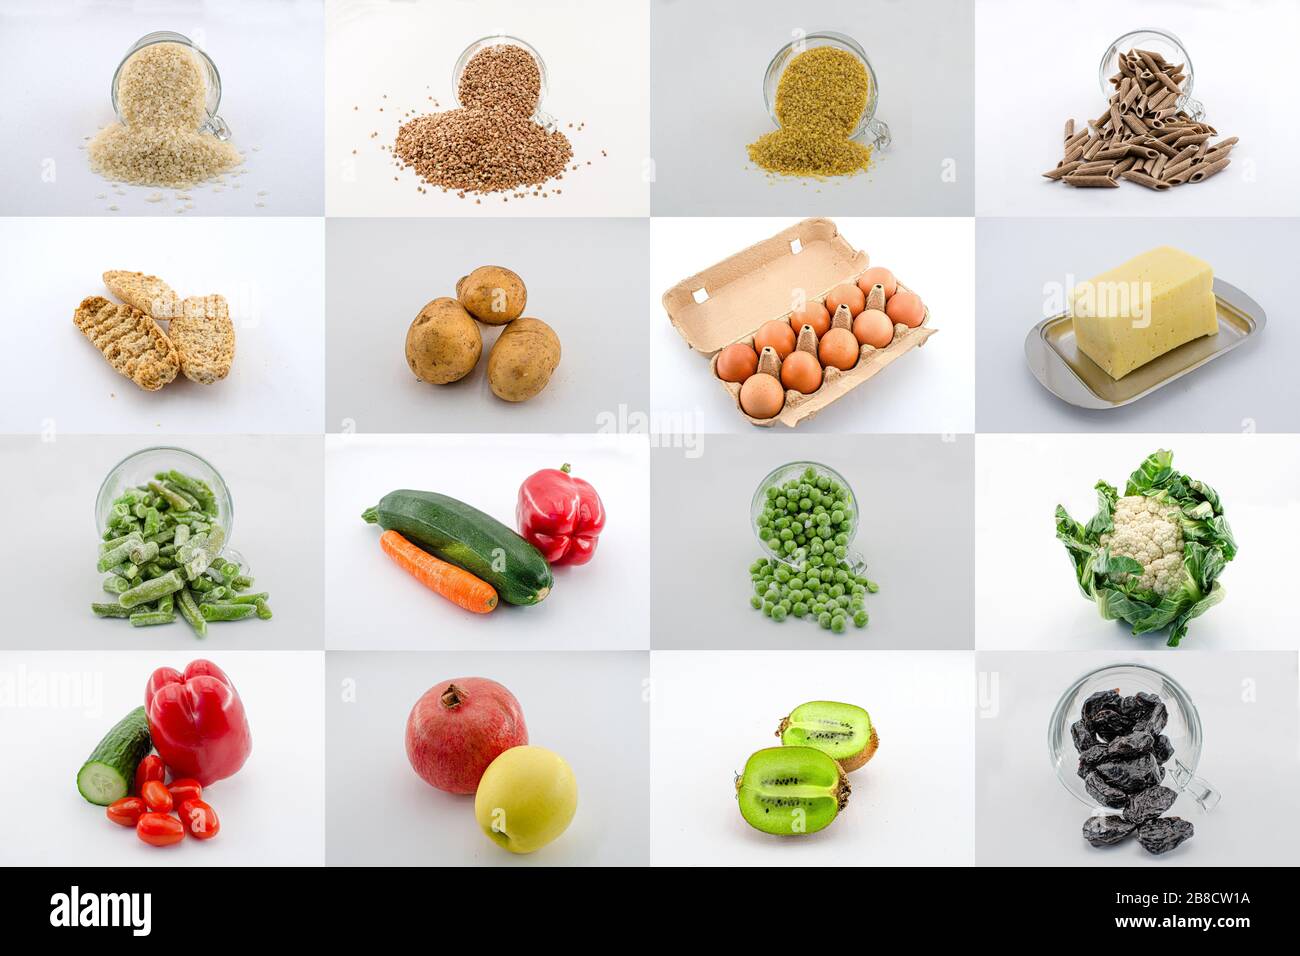 Un mosaico o collage de una variedad de plazas de comida. Collage de alimentos - grañadas, frutas, verduras, queso, verduras congeladas, huevos, frutas secas Foto de stock